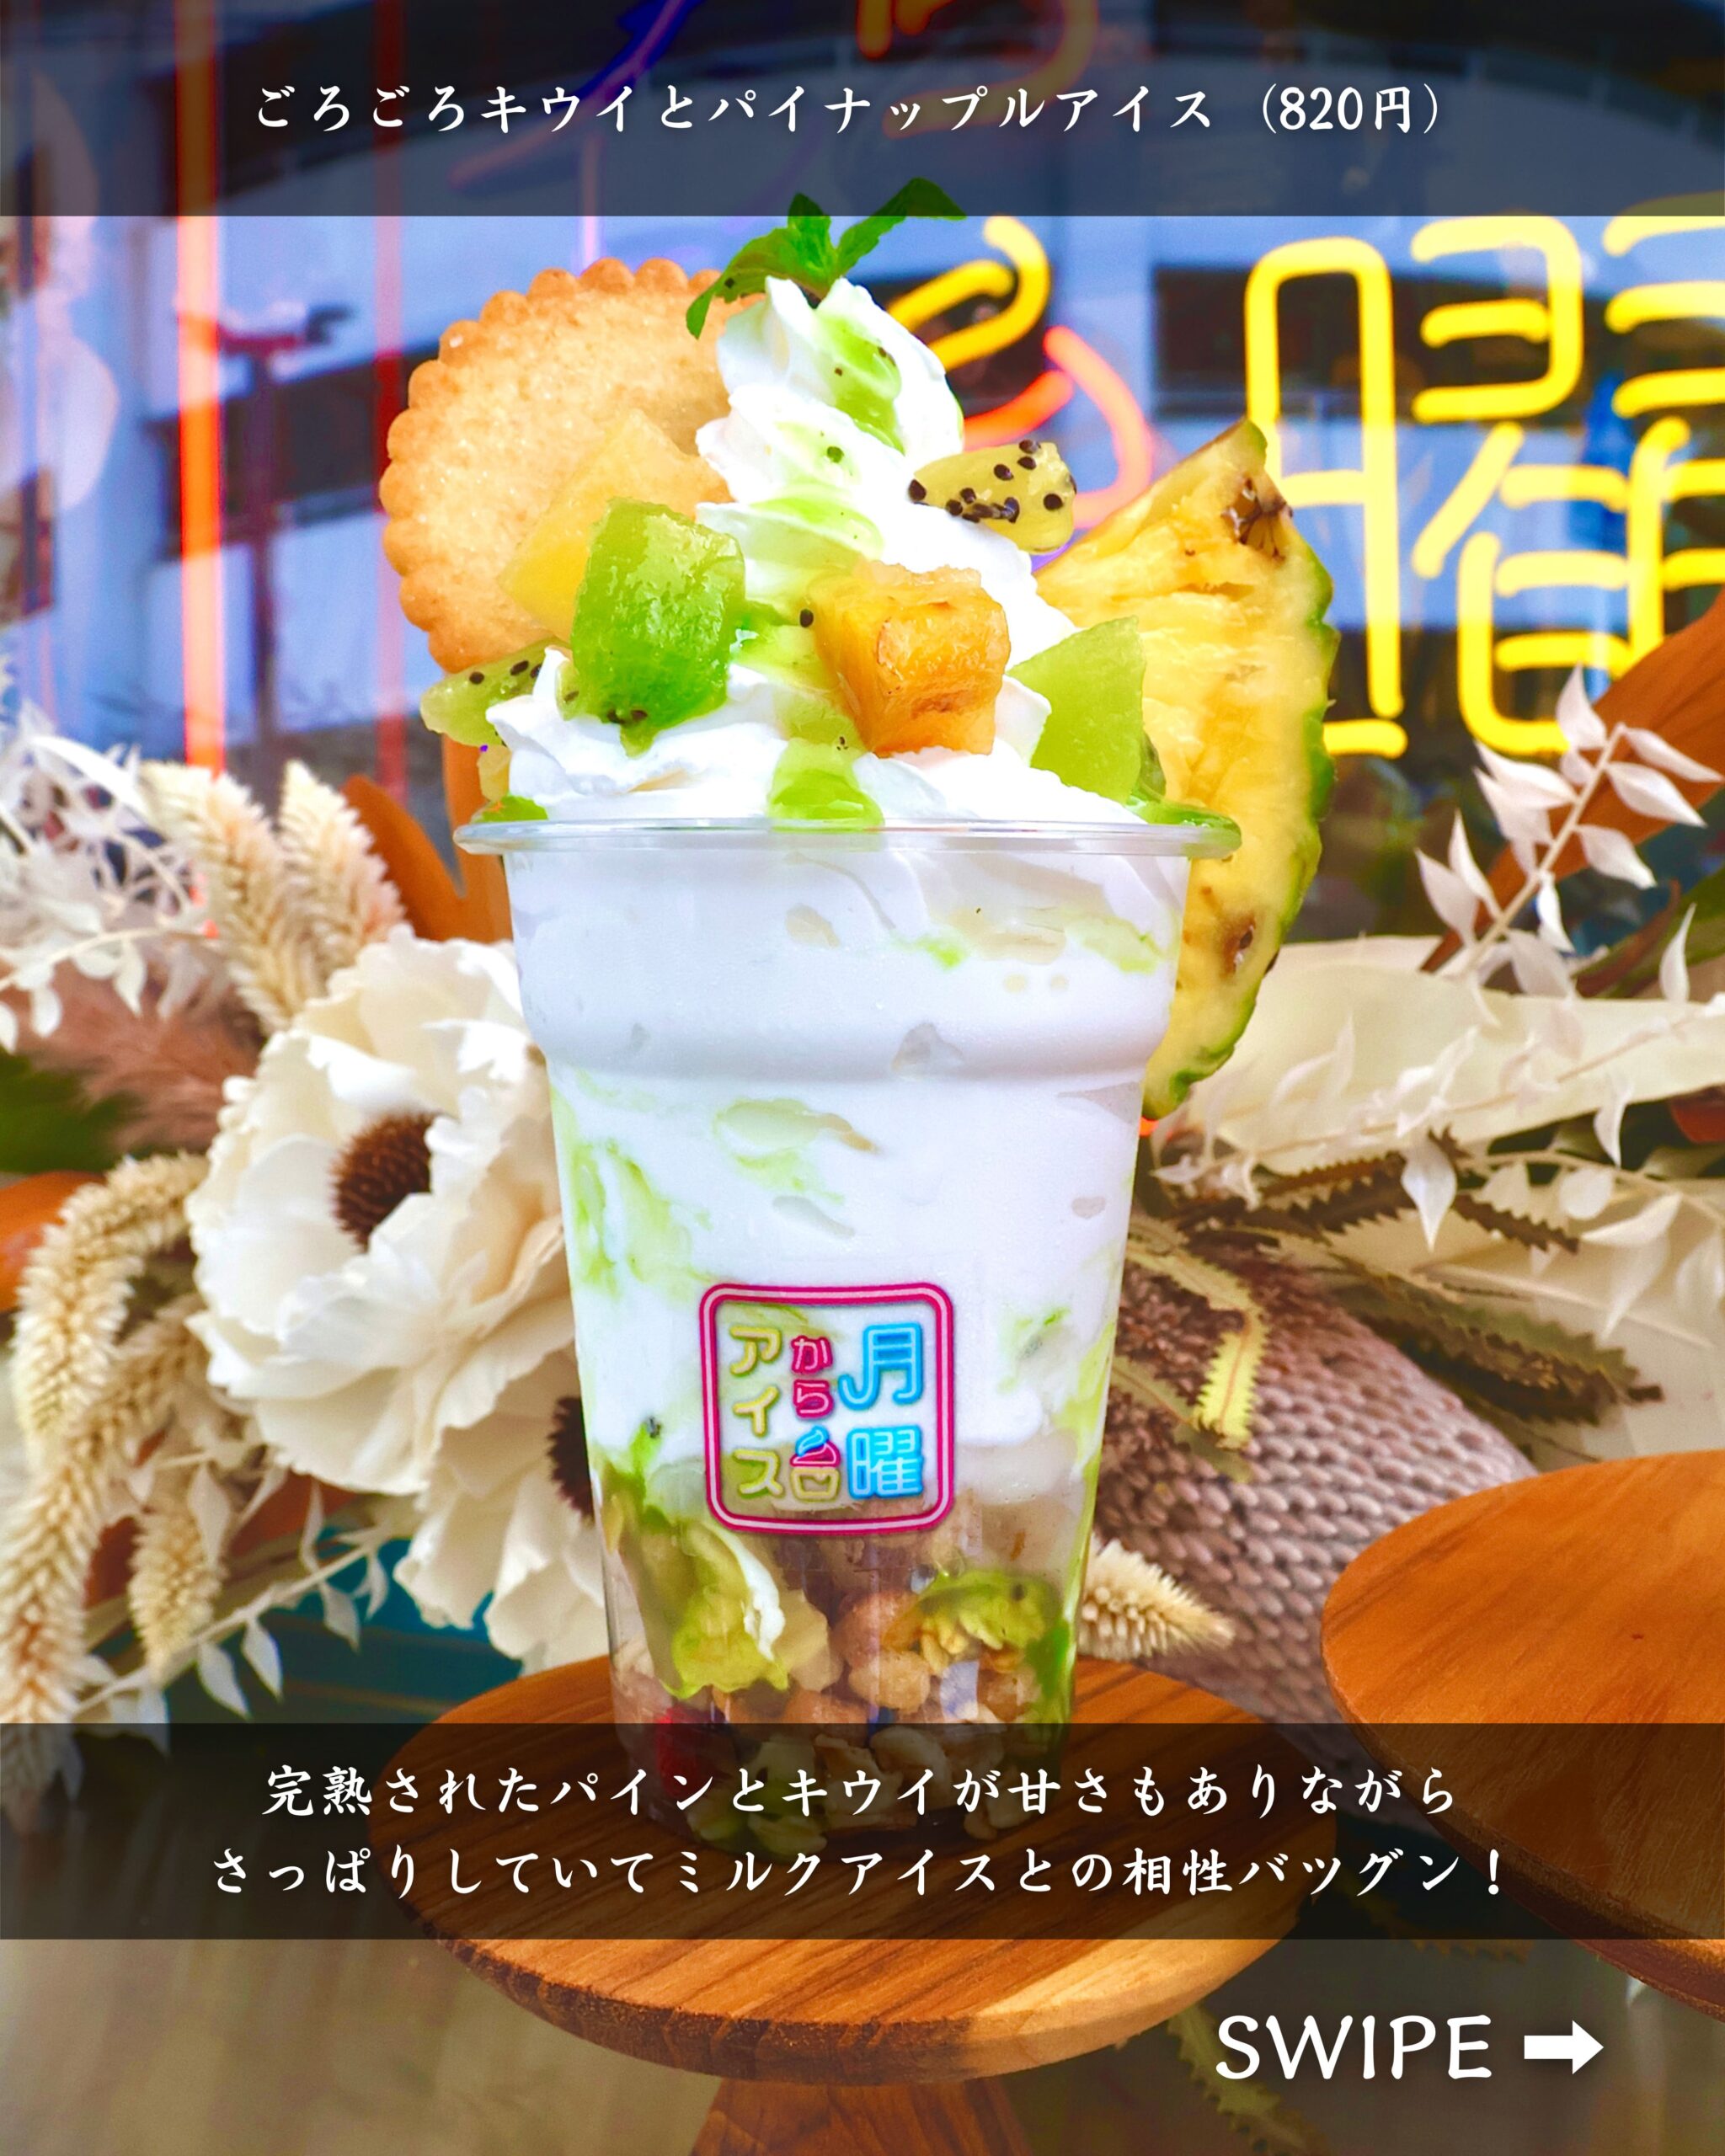 青森県弘前市にある「夜アイス専門店月曜からアイス」の「ごろごろキウイとパイナップルアイス」